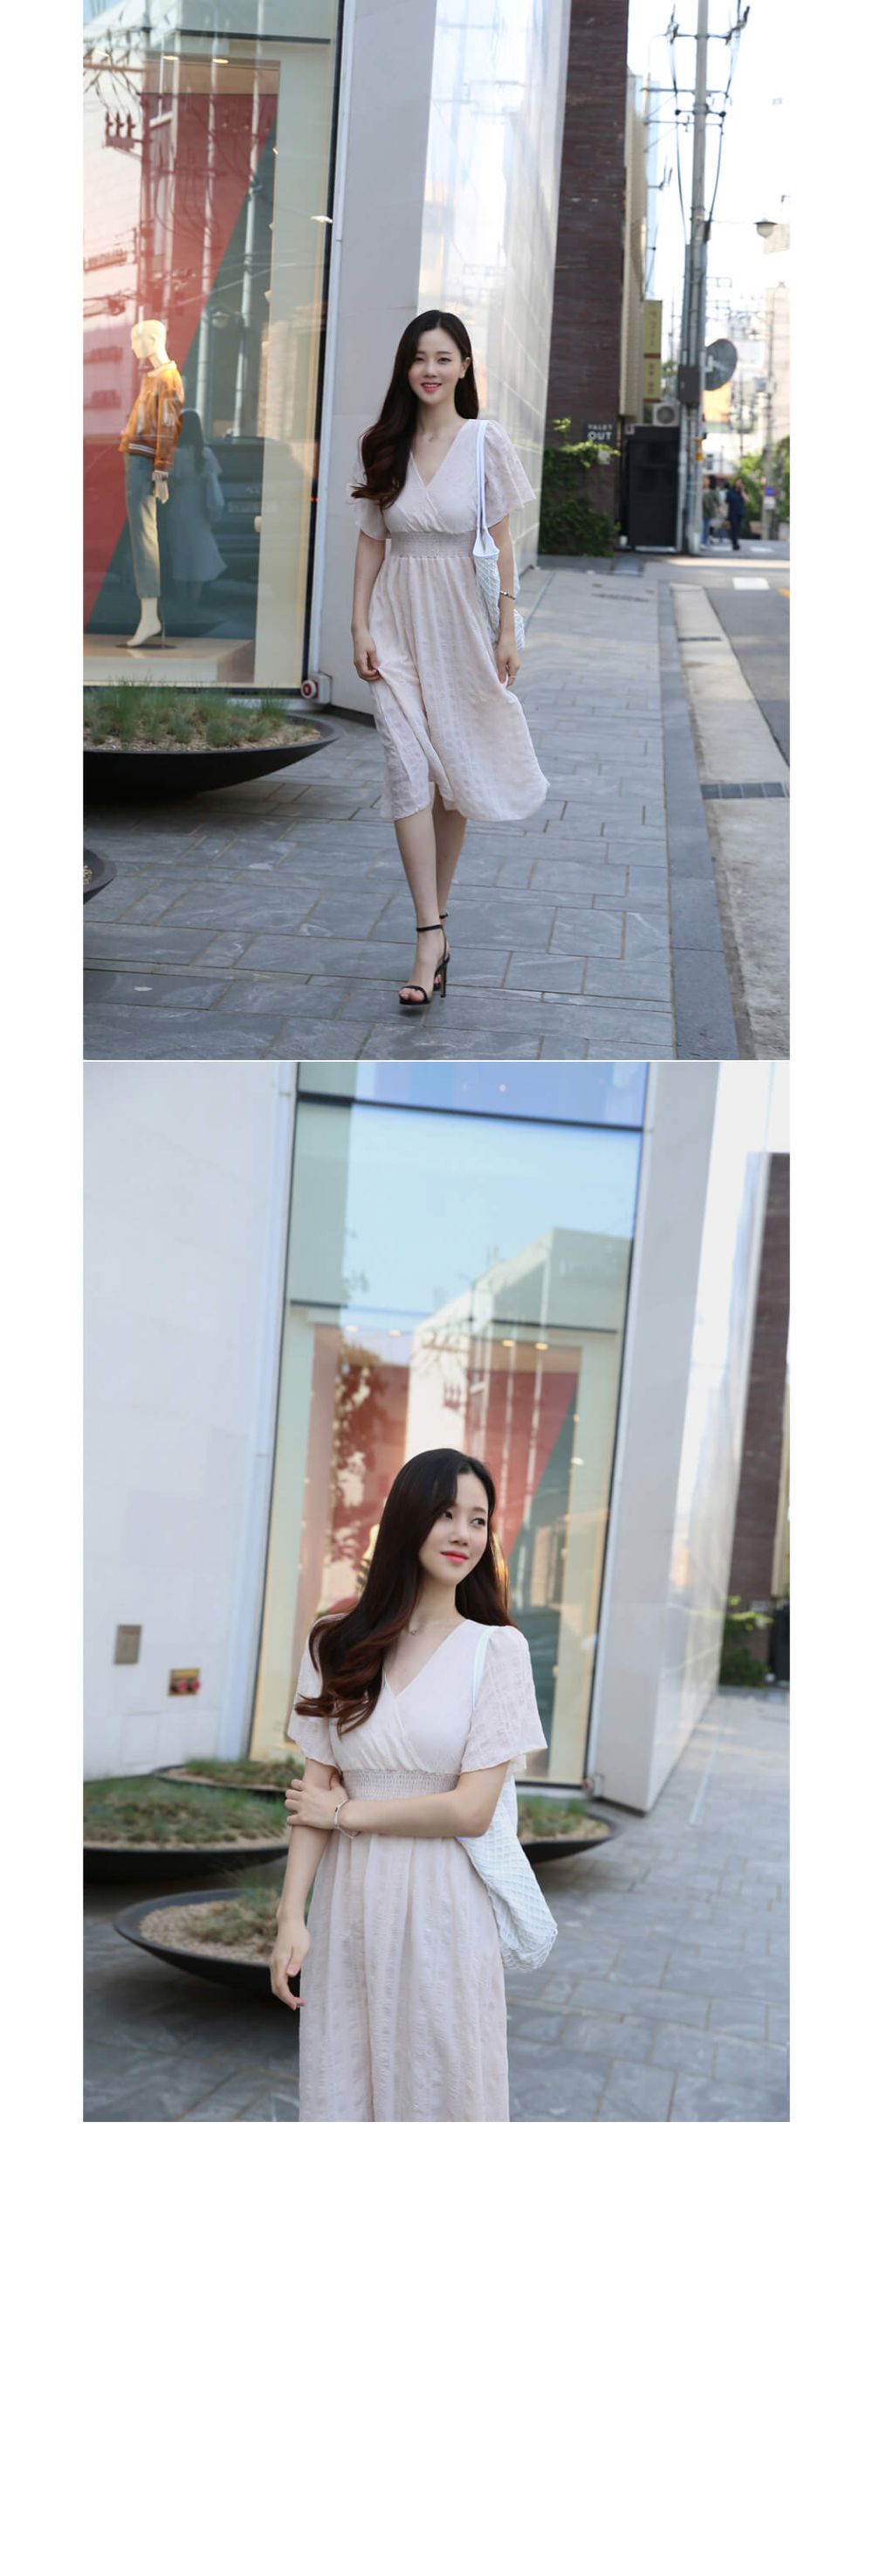 韓國平價服飾 雪紡V領中長連身裙